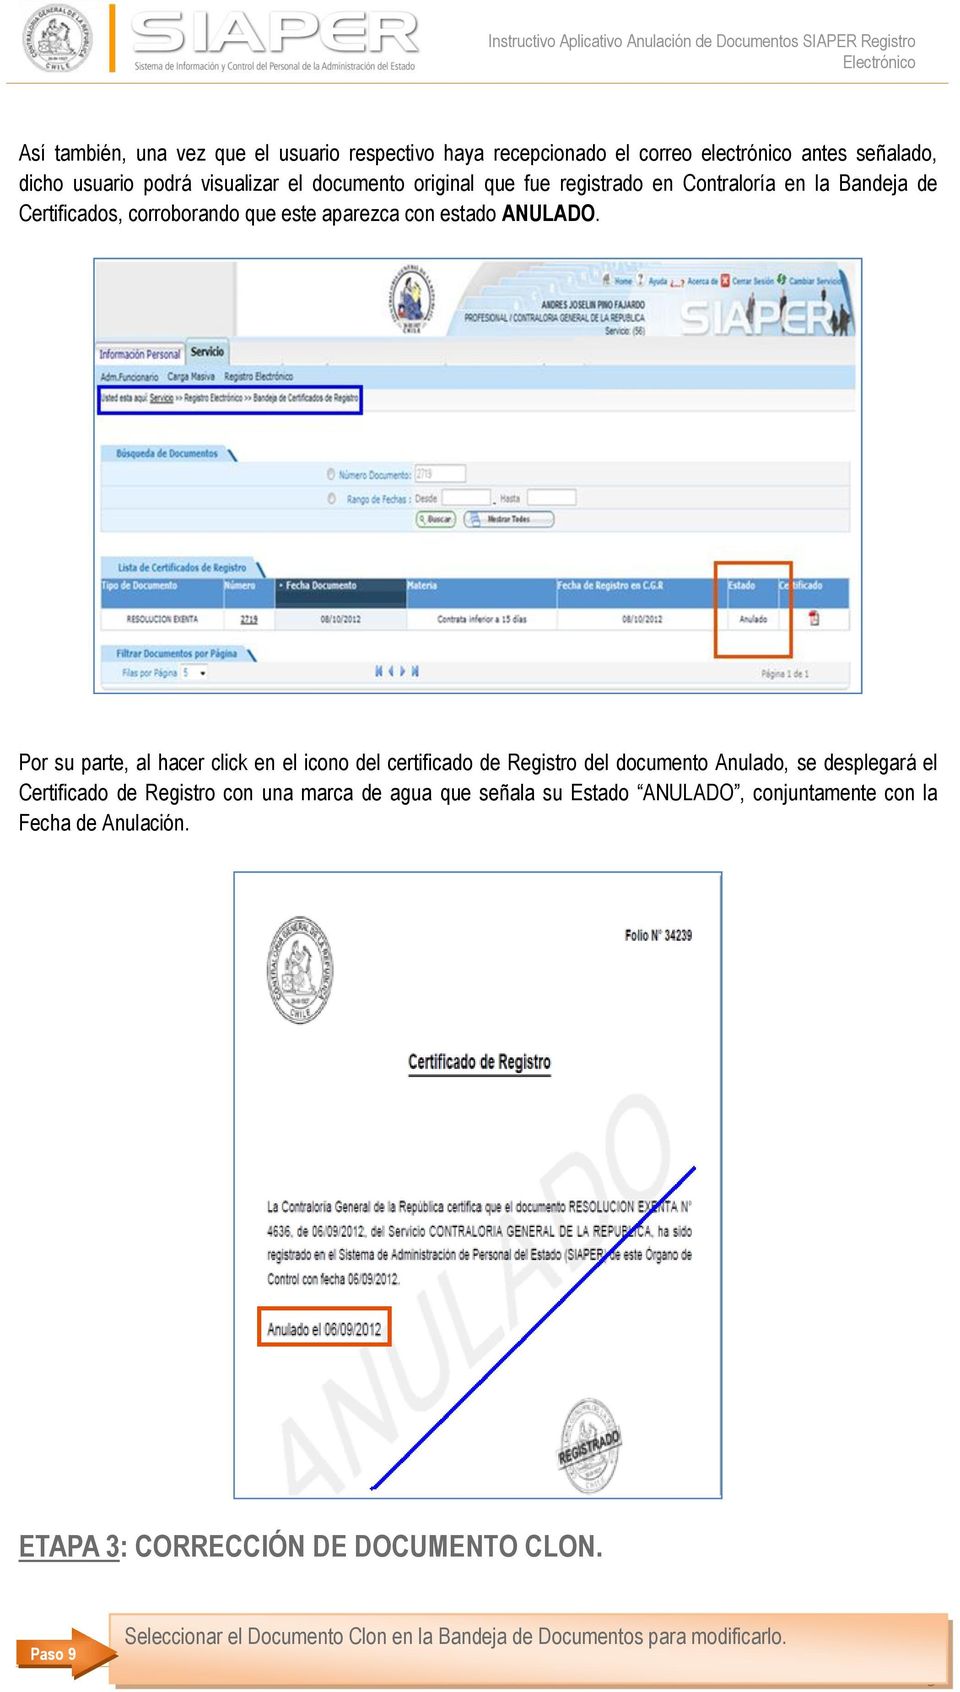 Por su parte, al hacer click en el icono del certificado de Registro del documento Anulado, se desplegará el Certificado de Registro con una marca de agua